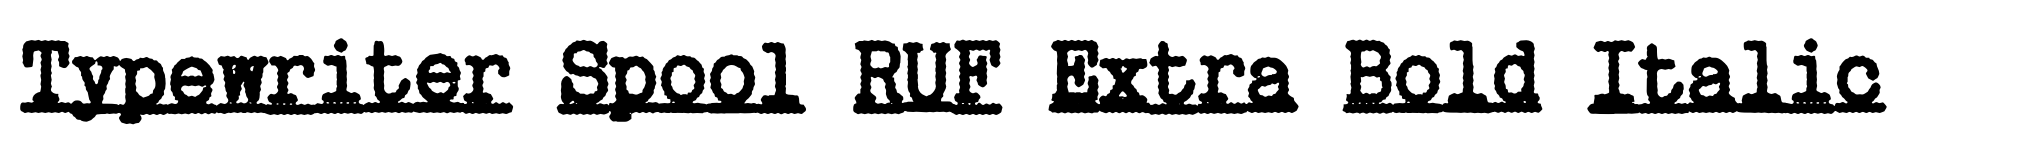 Typewriter Spool RUF Extra Bold Italic image